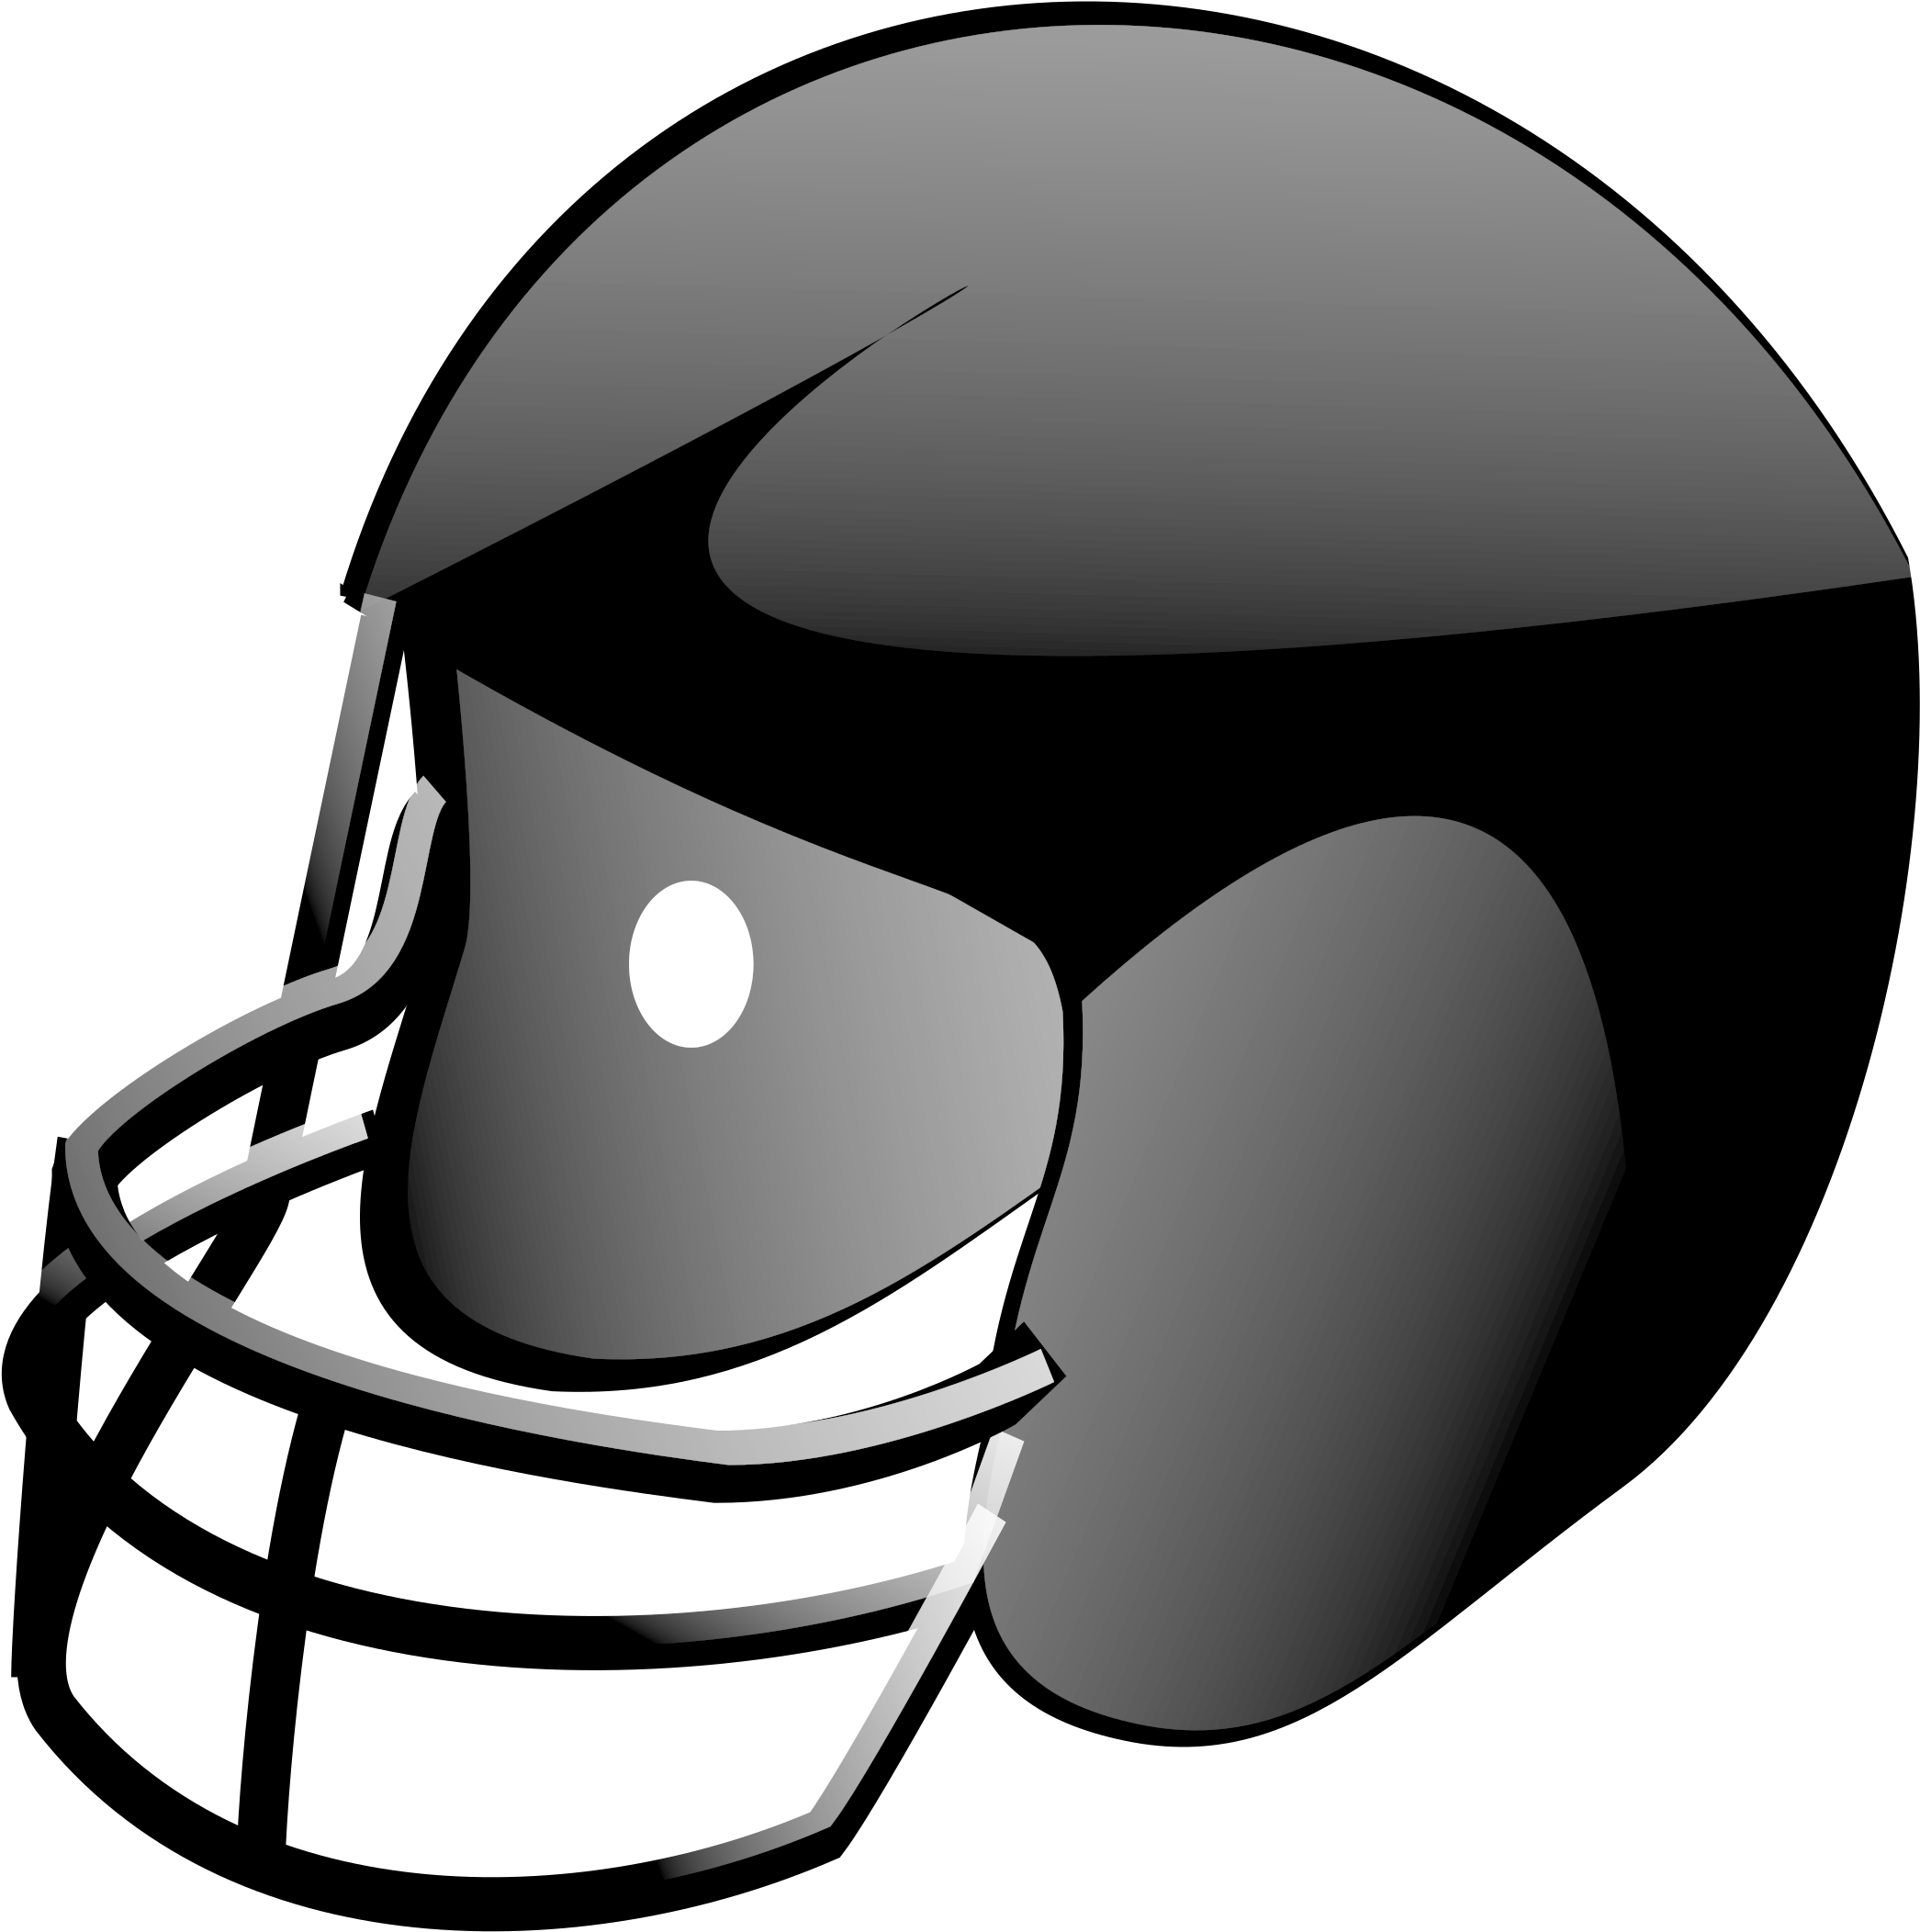 Football Helmet - Football Helmet Clip Art (2400x2400)